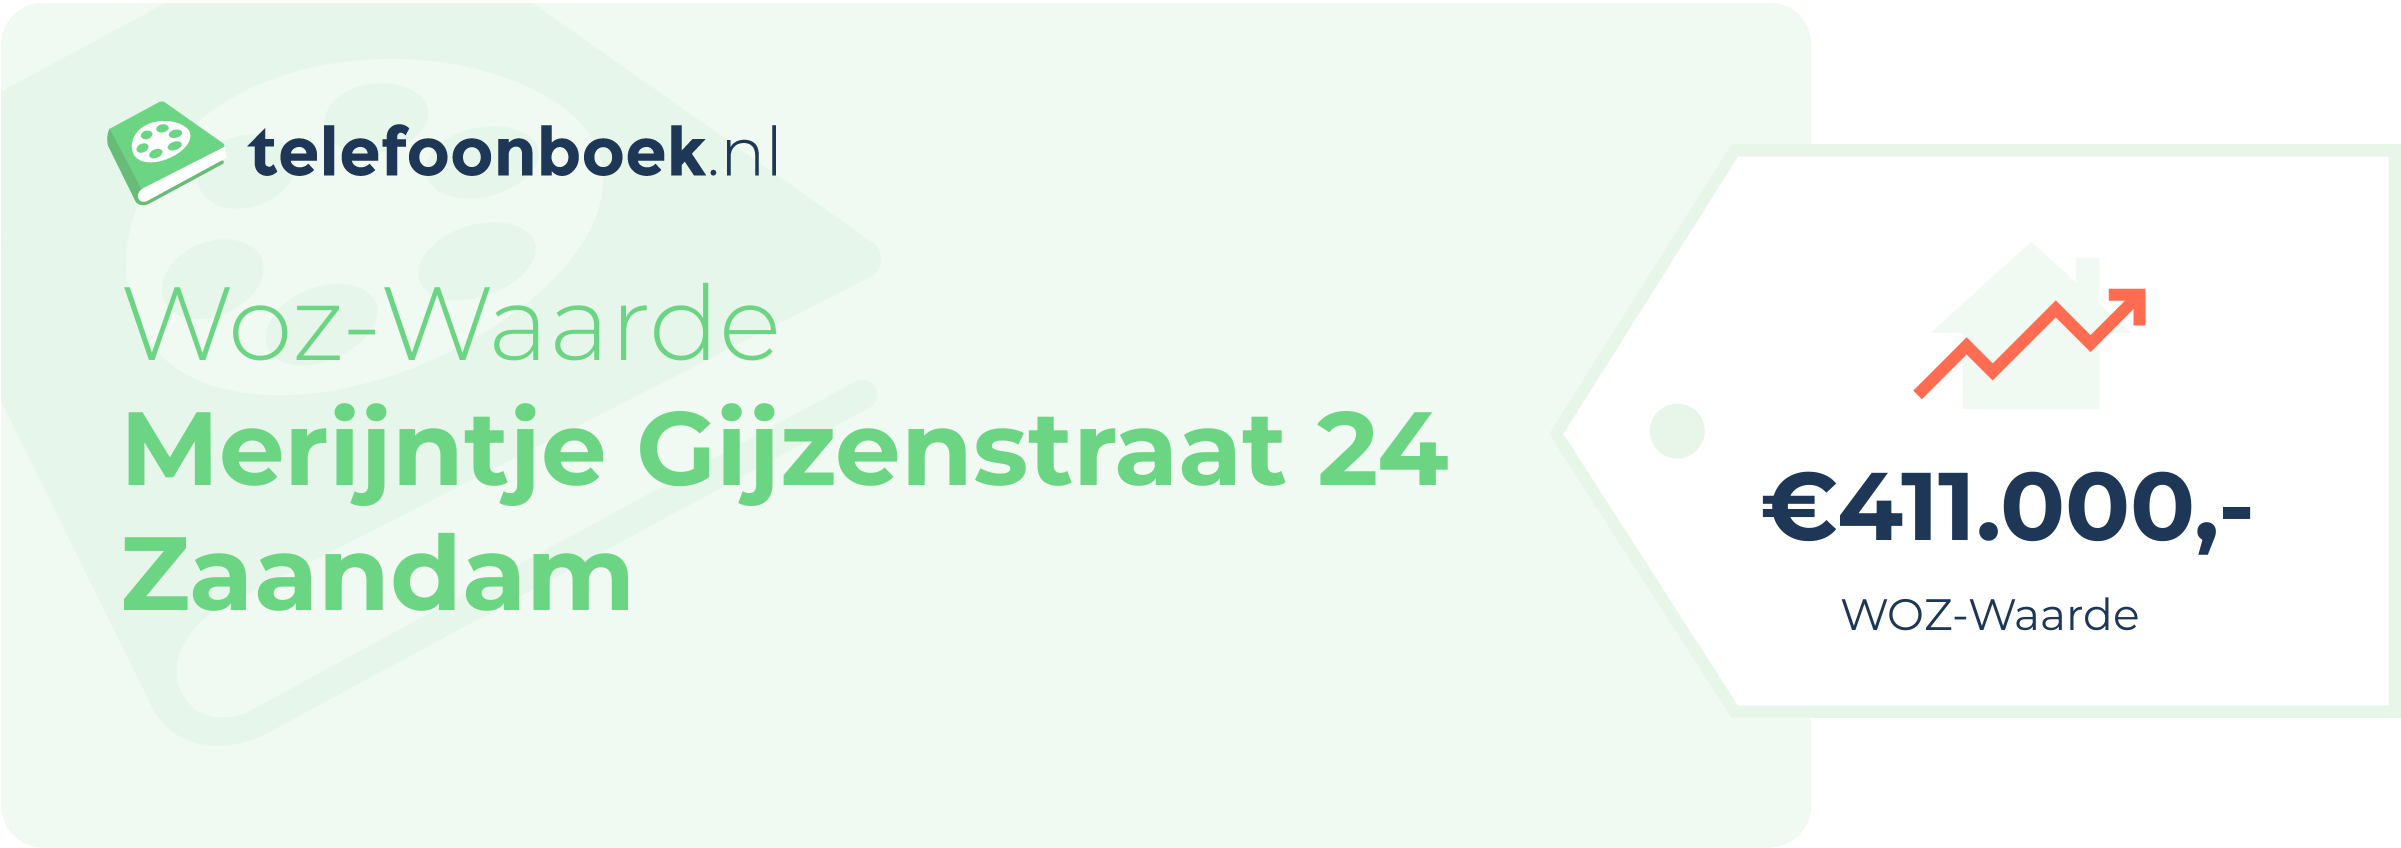 WOZ-waarde Merijntje Gijzenstraat 24 Zaandam